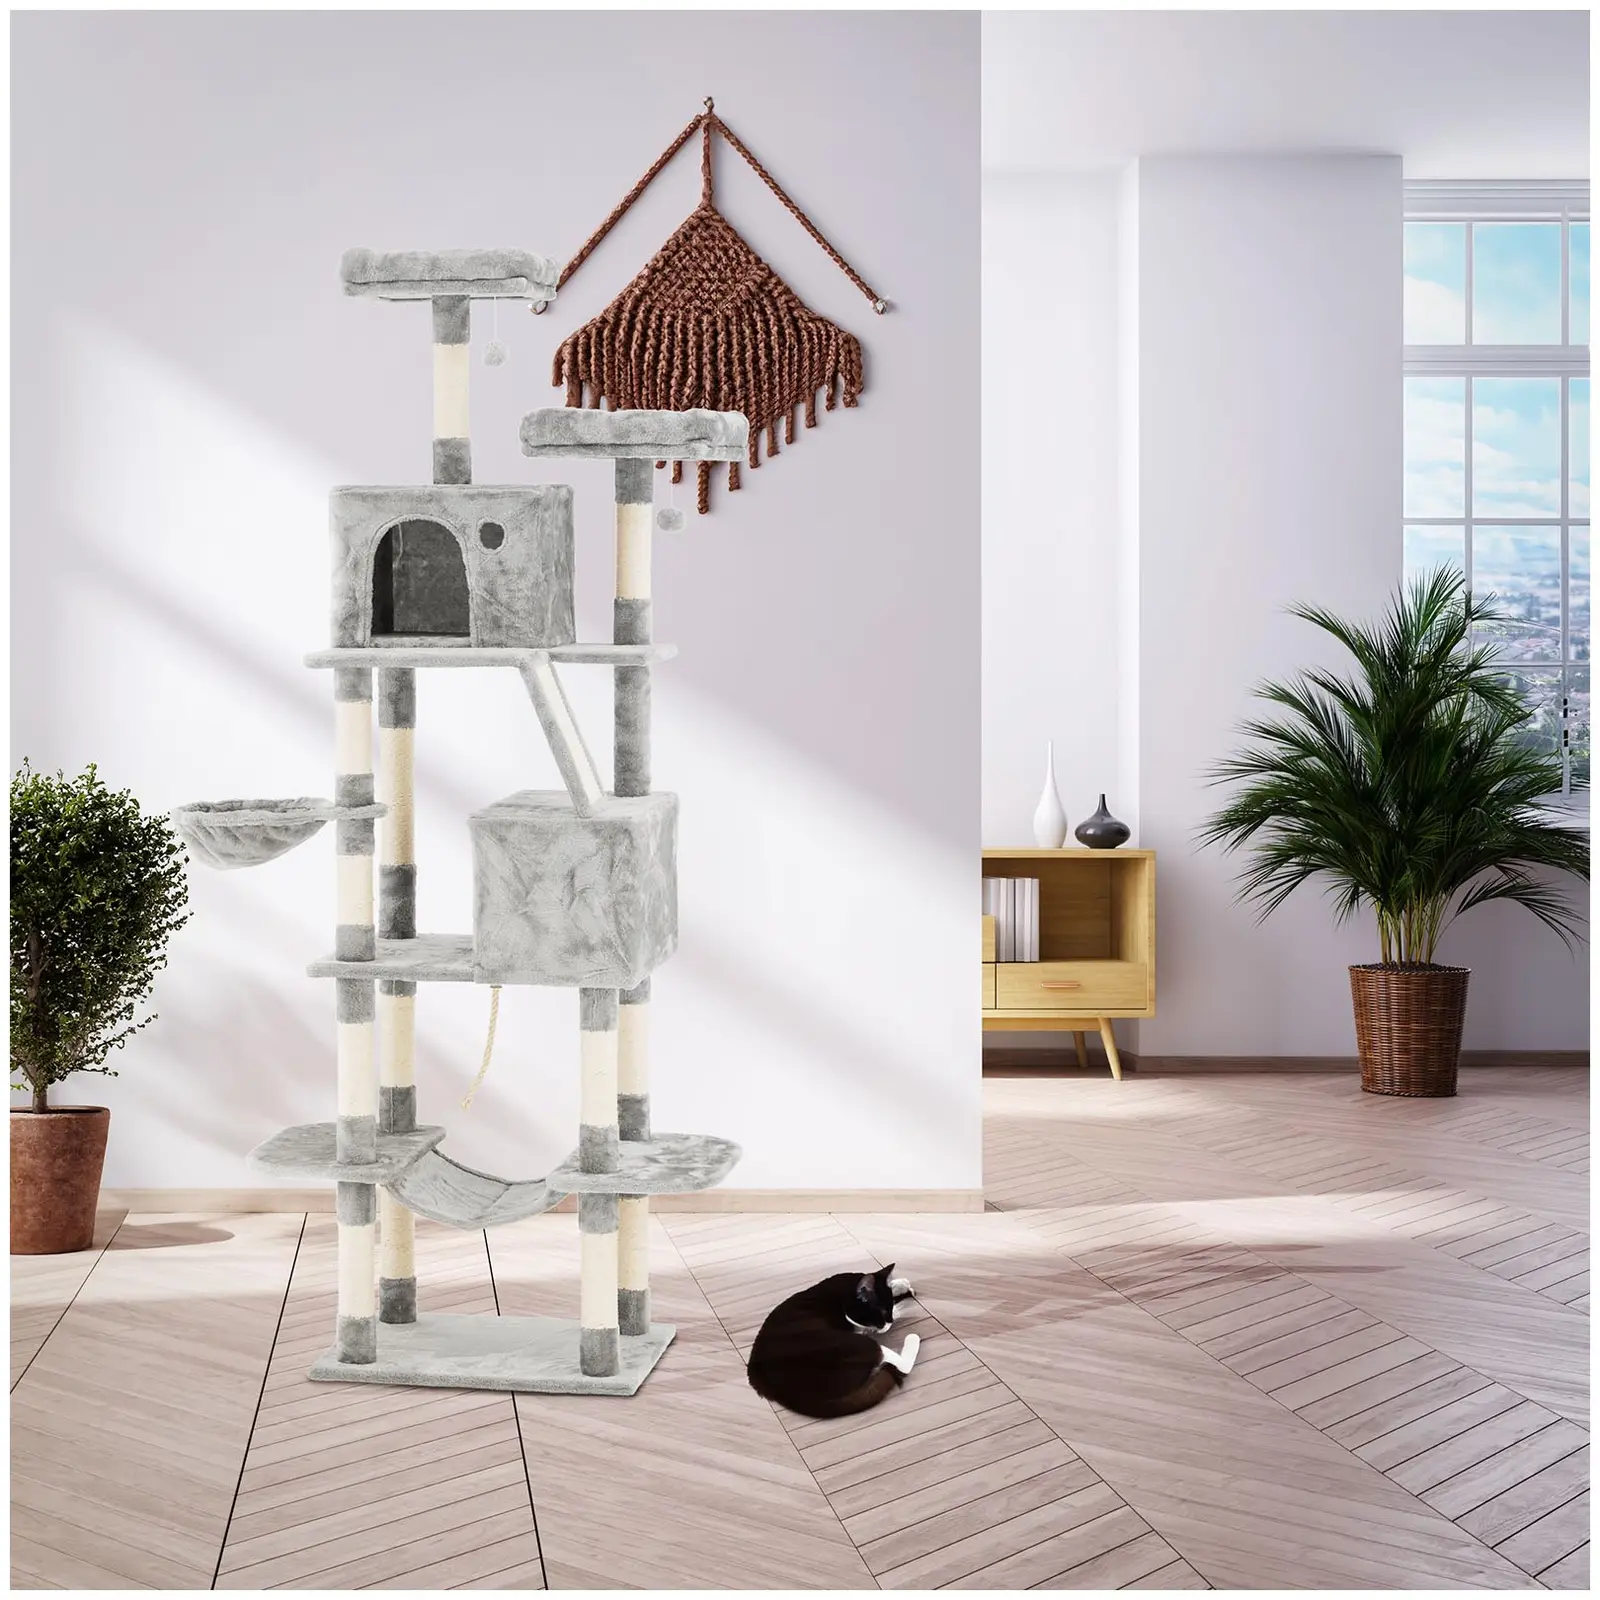 Tiragraffi per gatti - Grigio chiaro - 2 palline e amaca incluse - 60 x 50 x 206 cm